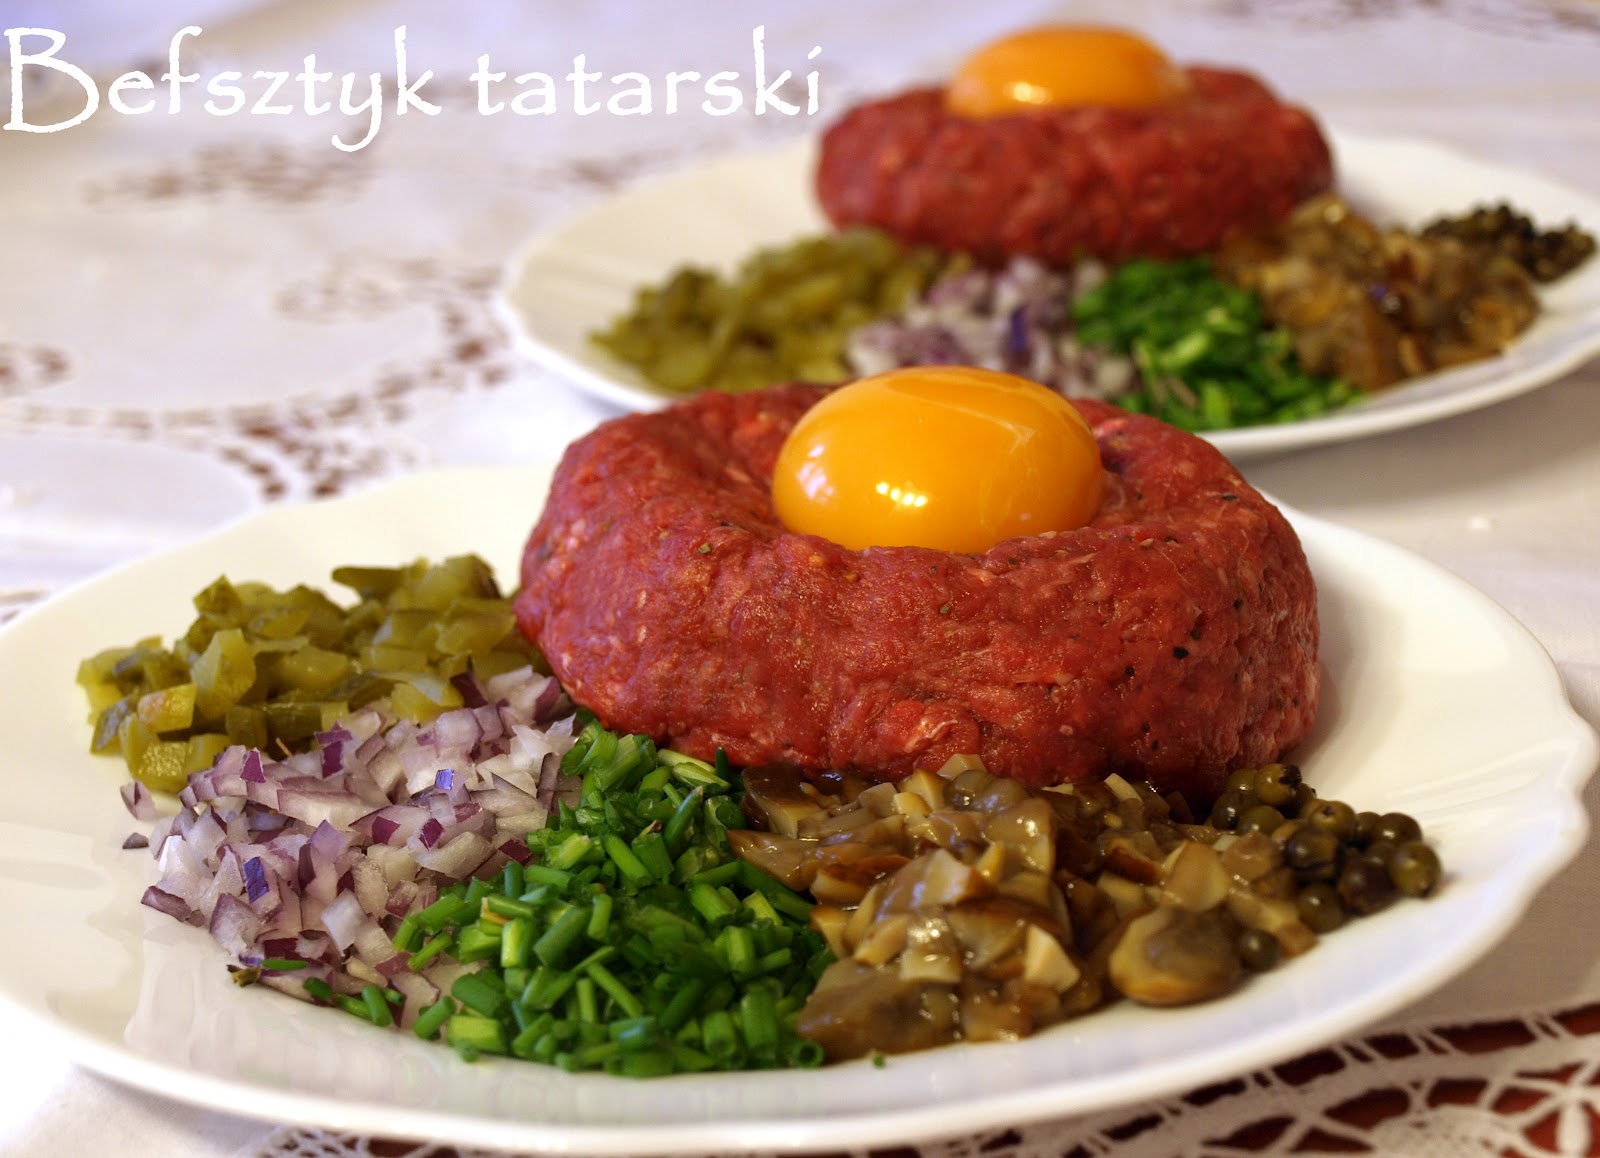 pysznie i dietetycznie!: Befsztyk tatarski (tatar)